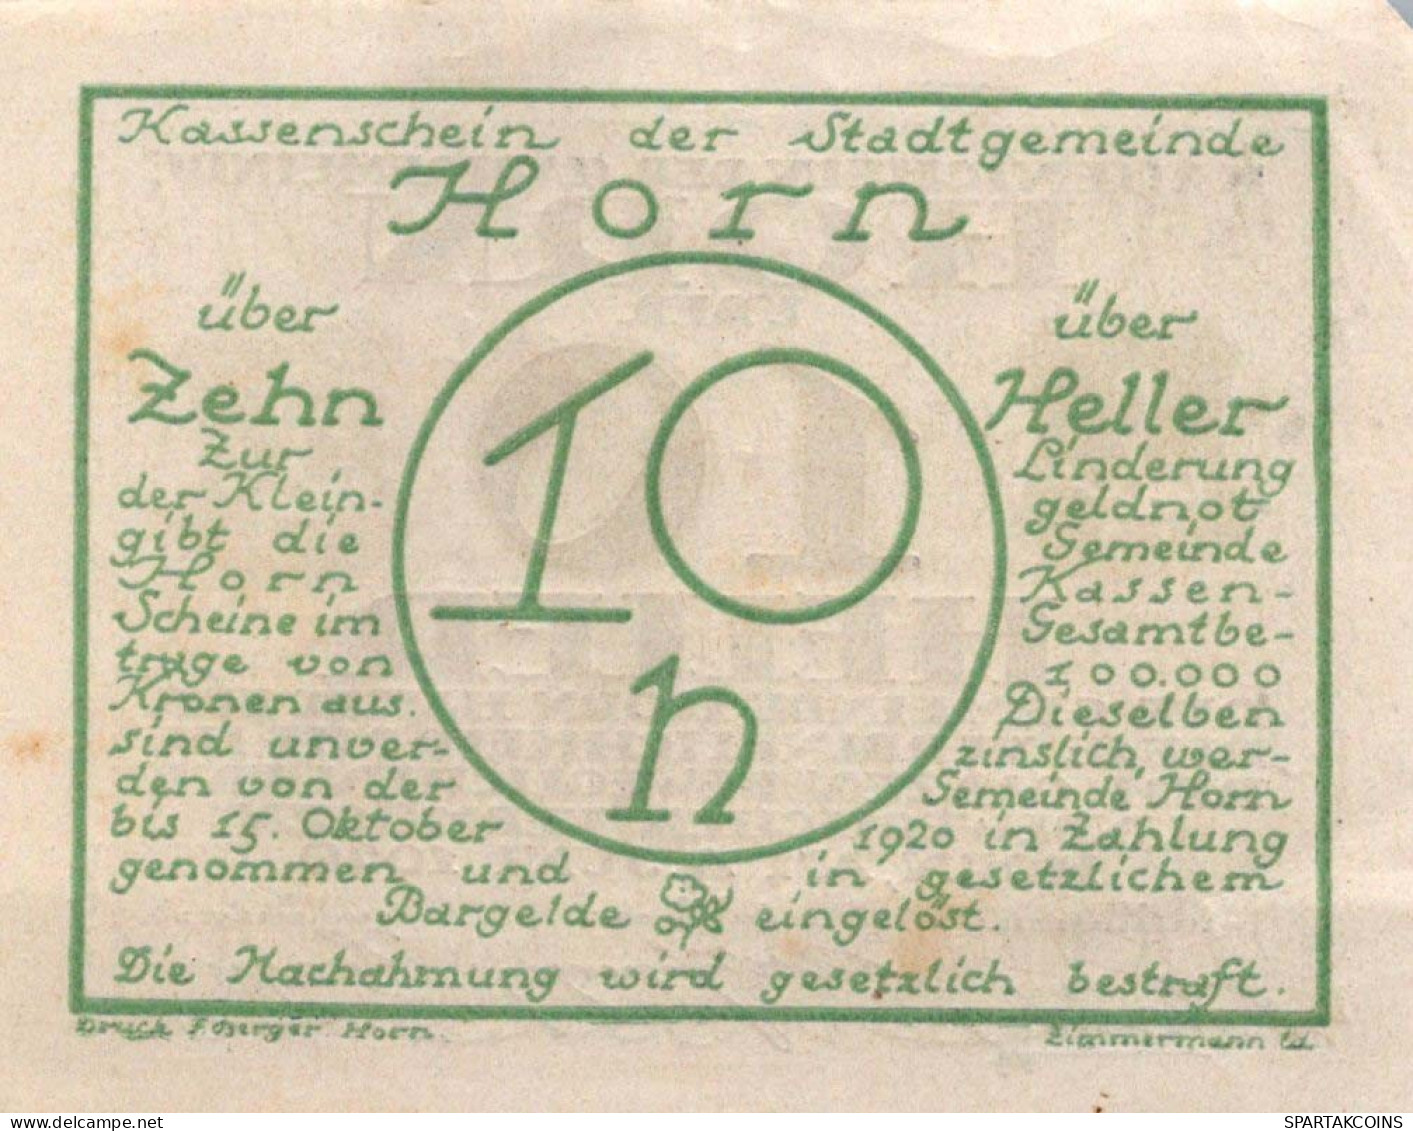 10 HELLER 1920 Stadt HORN Niedrigeren Österreich Notgeld Banknote #PD630 - Lokale Ausgaben